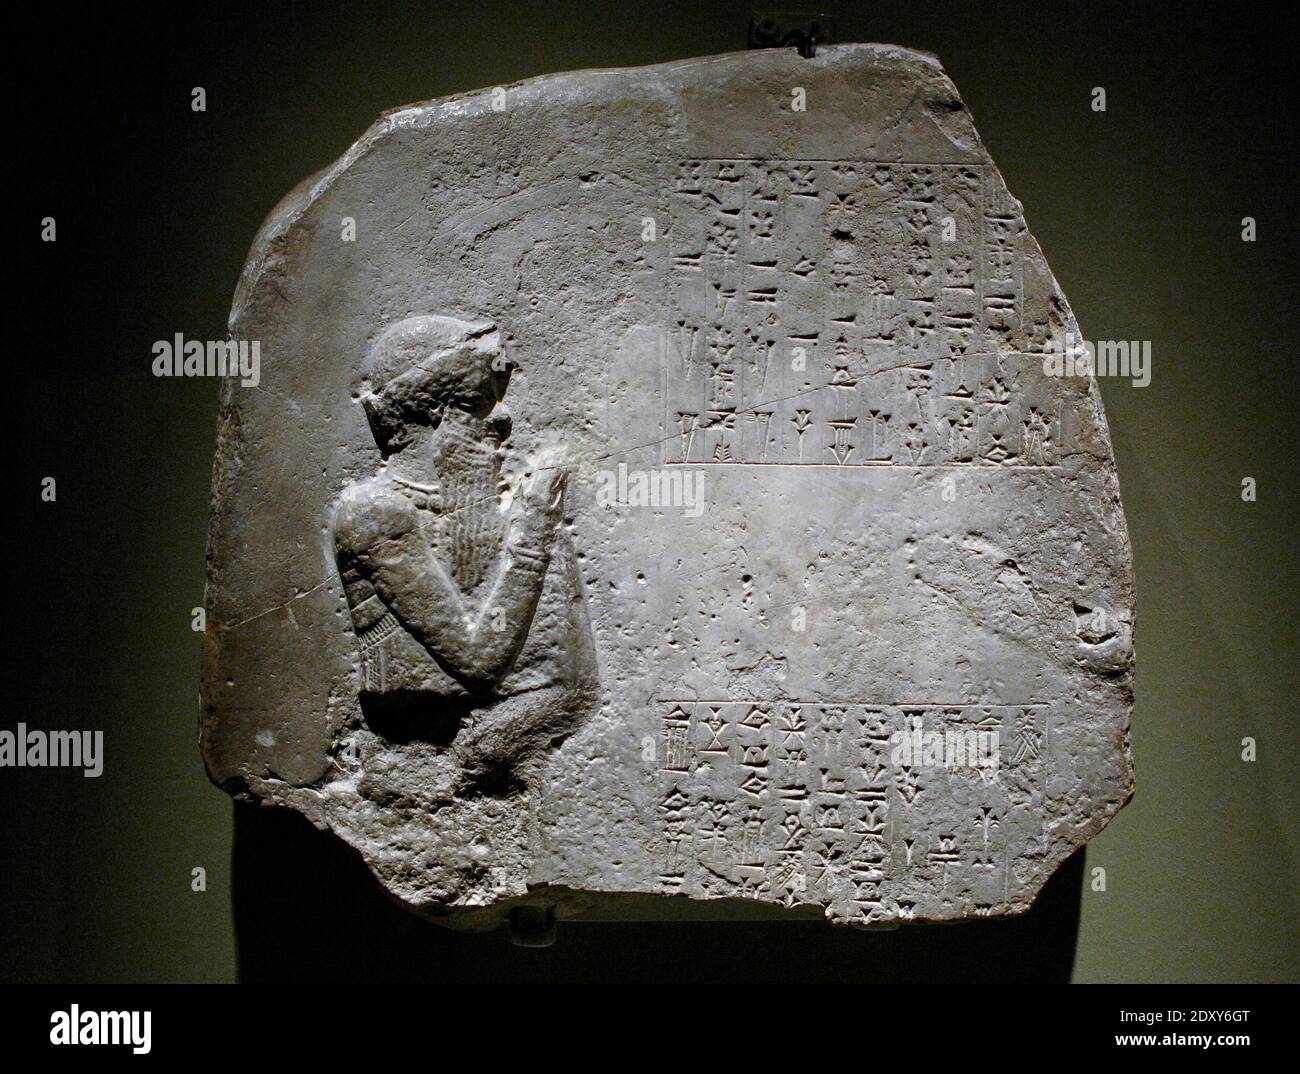 Offerta votiva. Frammento di una stele di pietra dedicata da Itur-Ashdum. Prima dinastia di Babilonia, c.. 1760-1750 A.C. Probabilmente da Sippar, Iraq meridionale. Calcare. L'iscrizione cuneiforme afferma che un alto funzionario chiamato Itur-Ashdum dedicò una statua alla dea Ashratum nel suo tempio, per conto del re Hammurabi (regnò il 1792-1750 a.C.). La figura scolpita può rappresentare Hammurabi. British Museum. Londra, Inghilterra, Regno Unito. Foto Stock